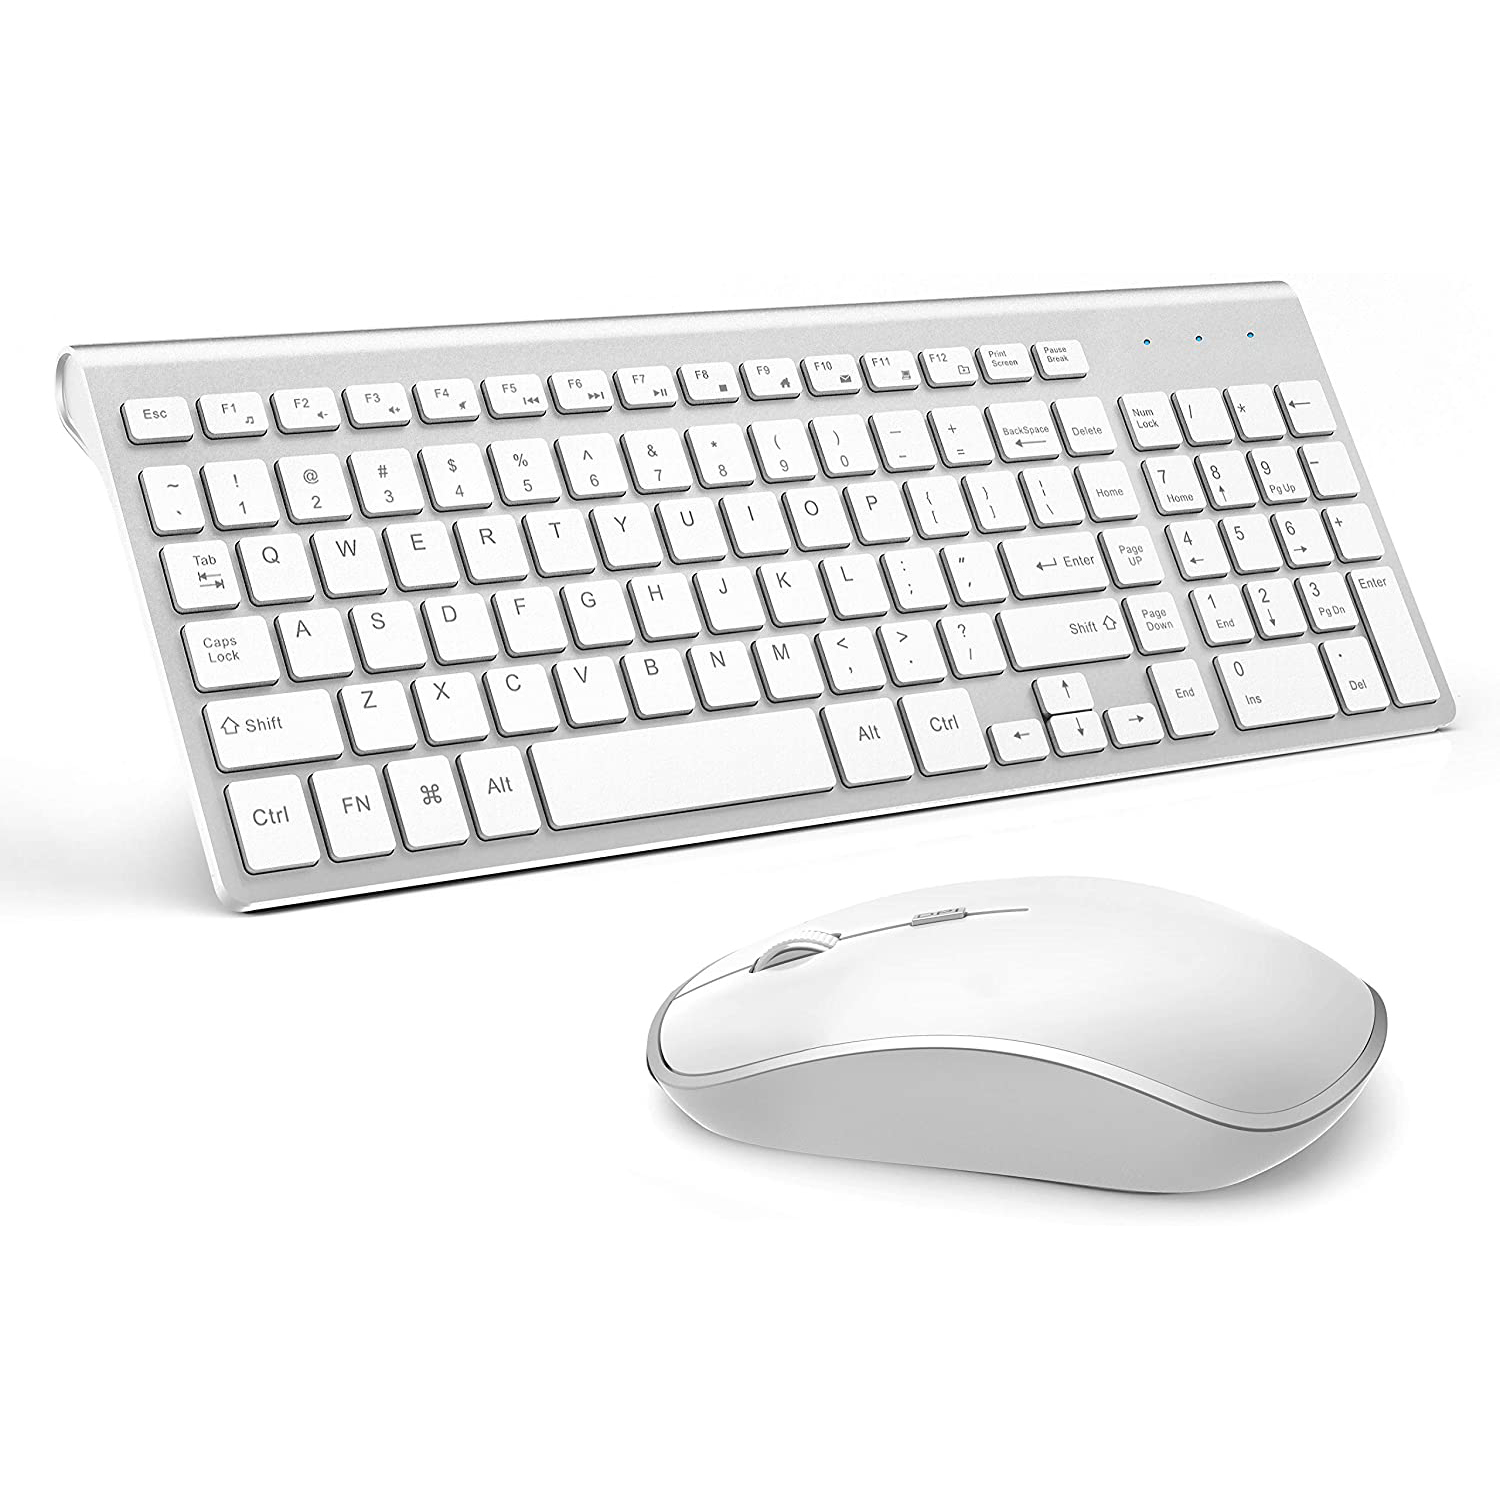 Draadloze Toetsenbord Muis, Full Size Met Numerieke Toetsen 。 compatibel Met Imac Mac Pc Laptop Tablet Computer Windows (Zilver Wit)